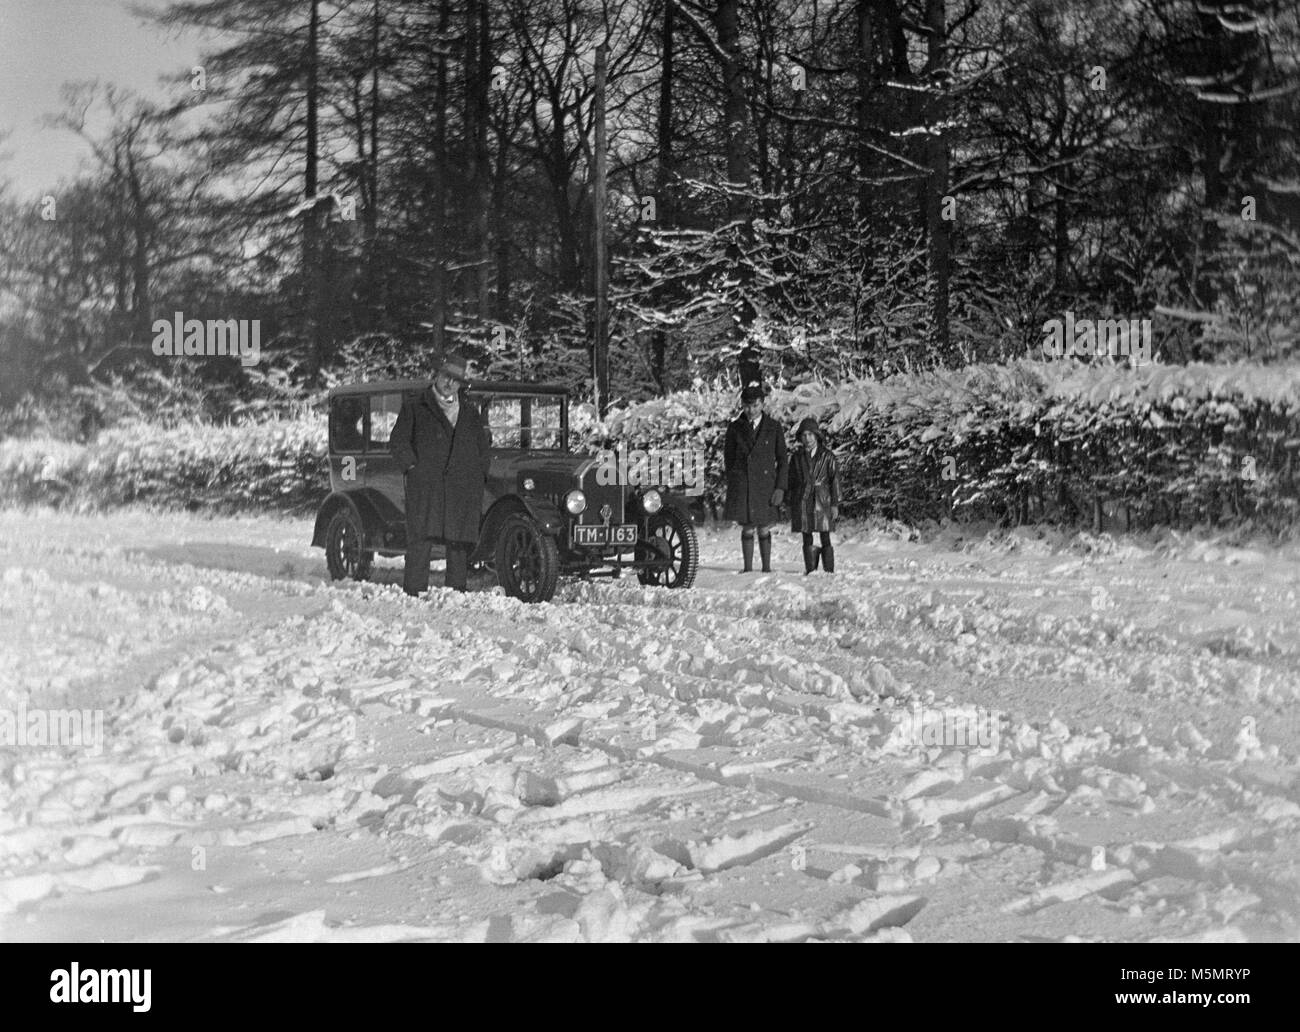 Années 1920 phot d'une voiture dans la neige avec deux hommes et un garçon à l'extérieur de la voiture. Banque D'Images